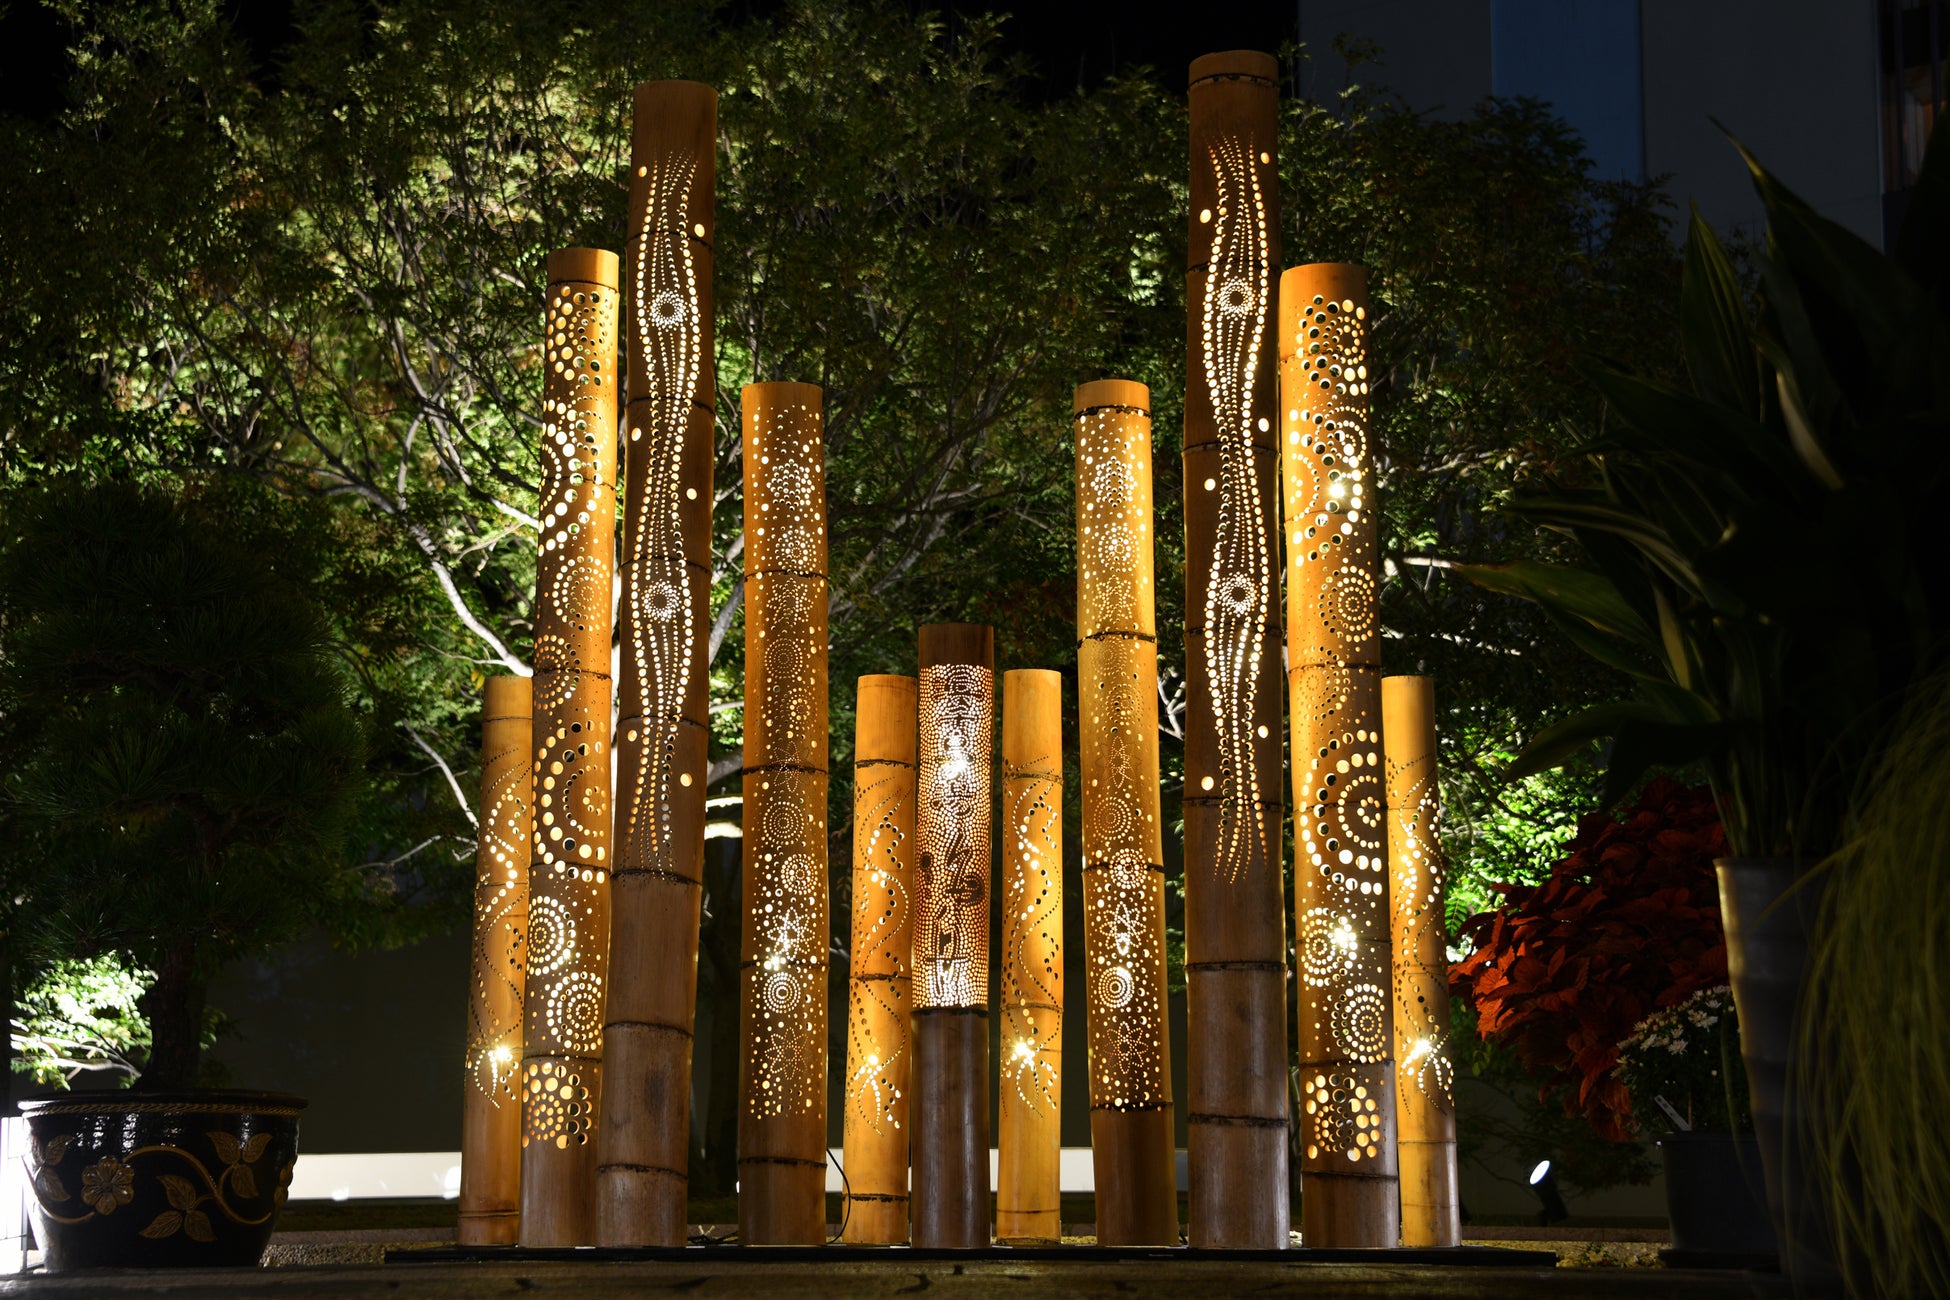 共立リゾート『浜千鳥の湯 海舟』オープン15周年記念パンダバンブーで製作した「竹あかり」を施設内で点灯